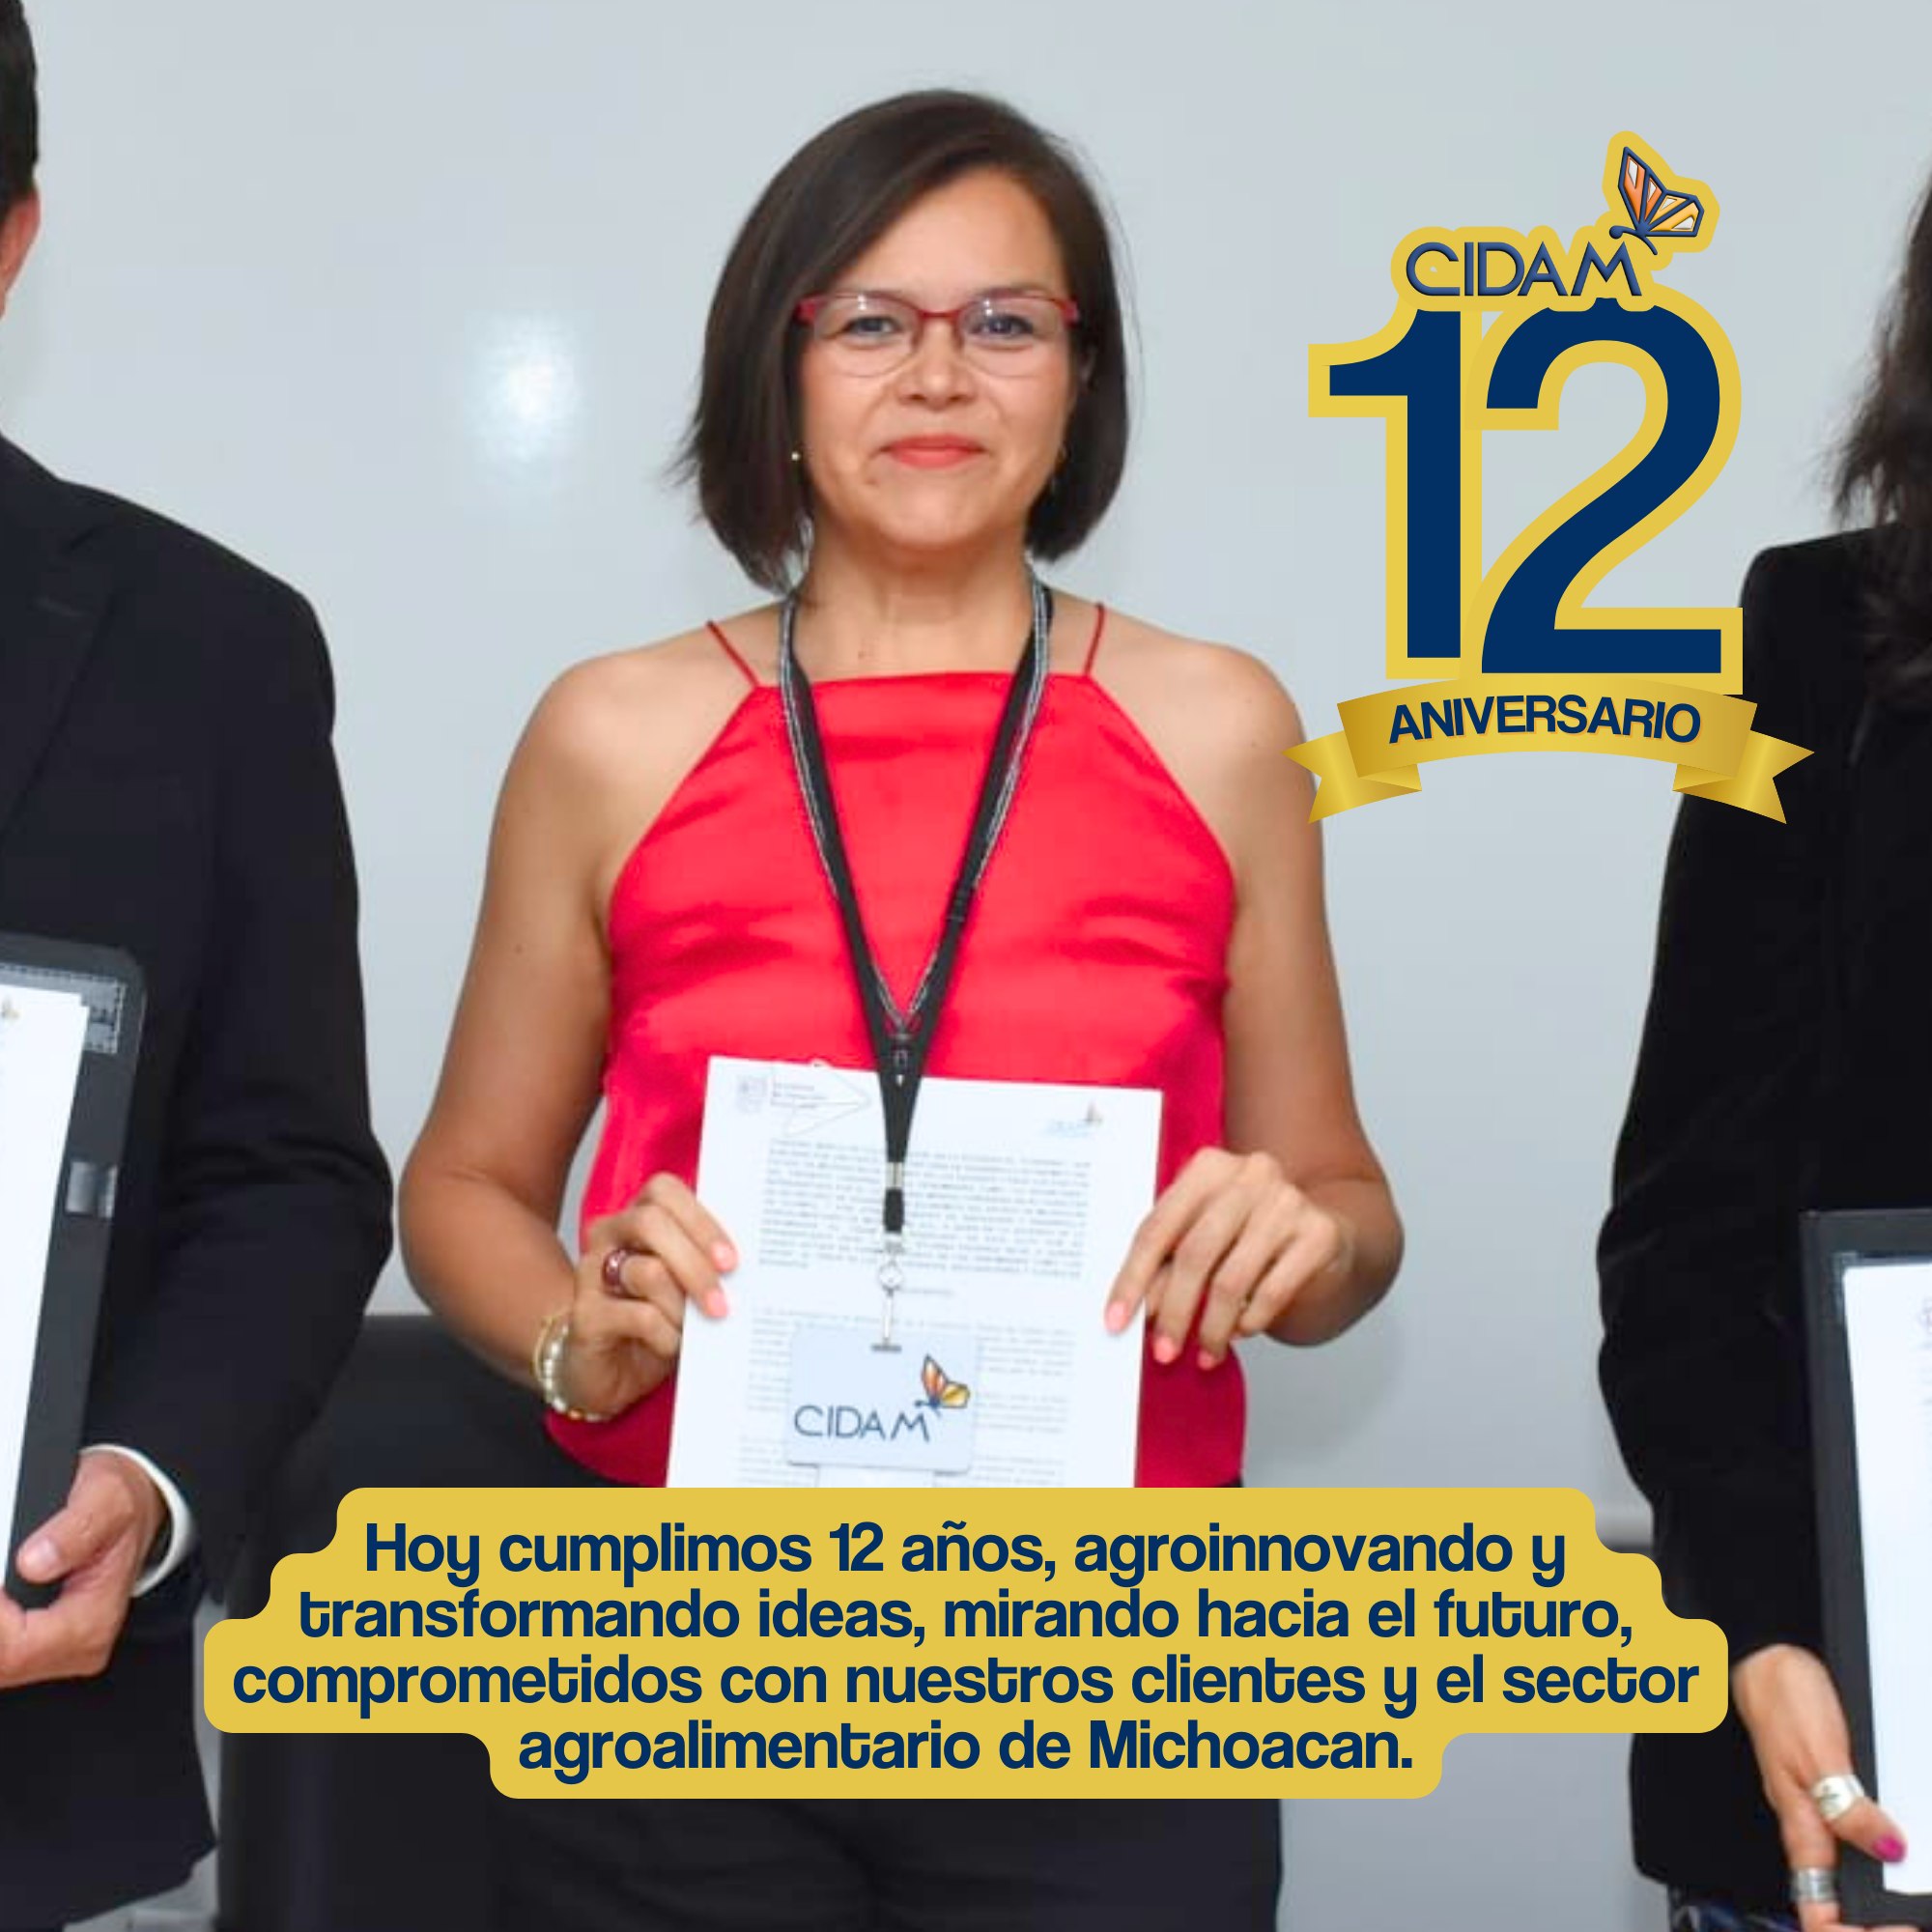 Celebramos el 12 aniversario del Centro de Innovación y Desarrollo Agroalimentario de Michoacán A.C. 